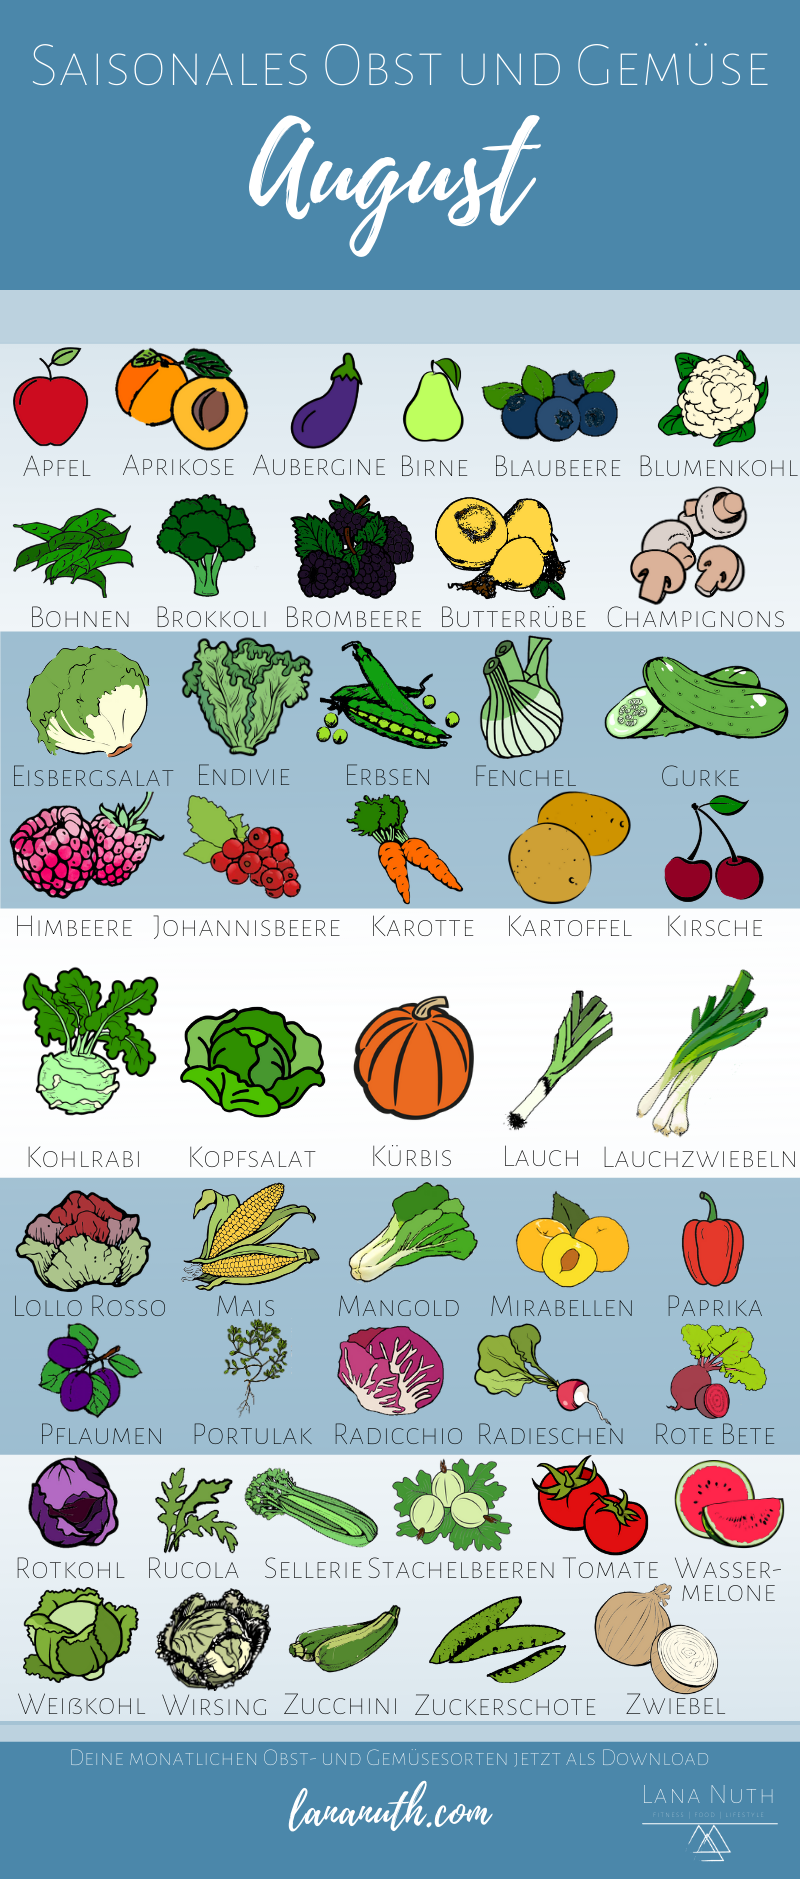 Saisonales Obst und Gemüse im August